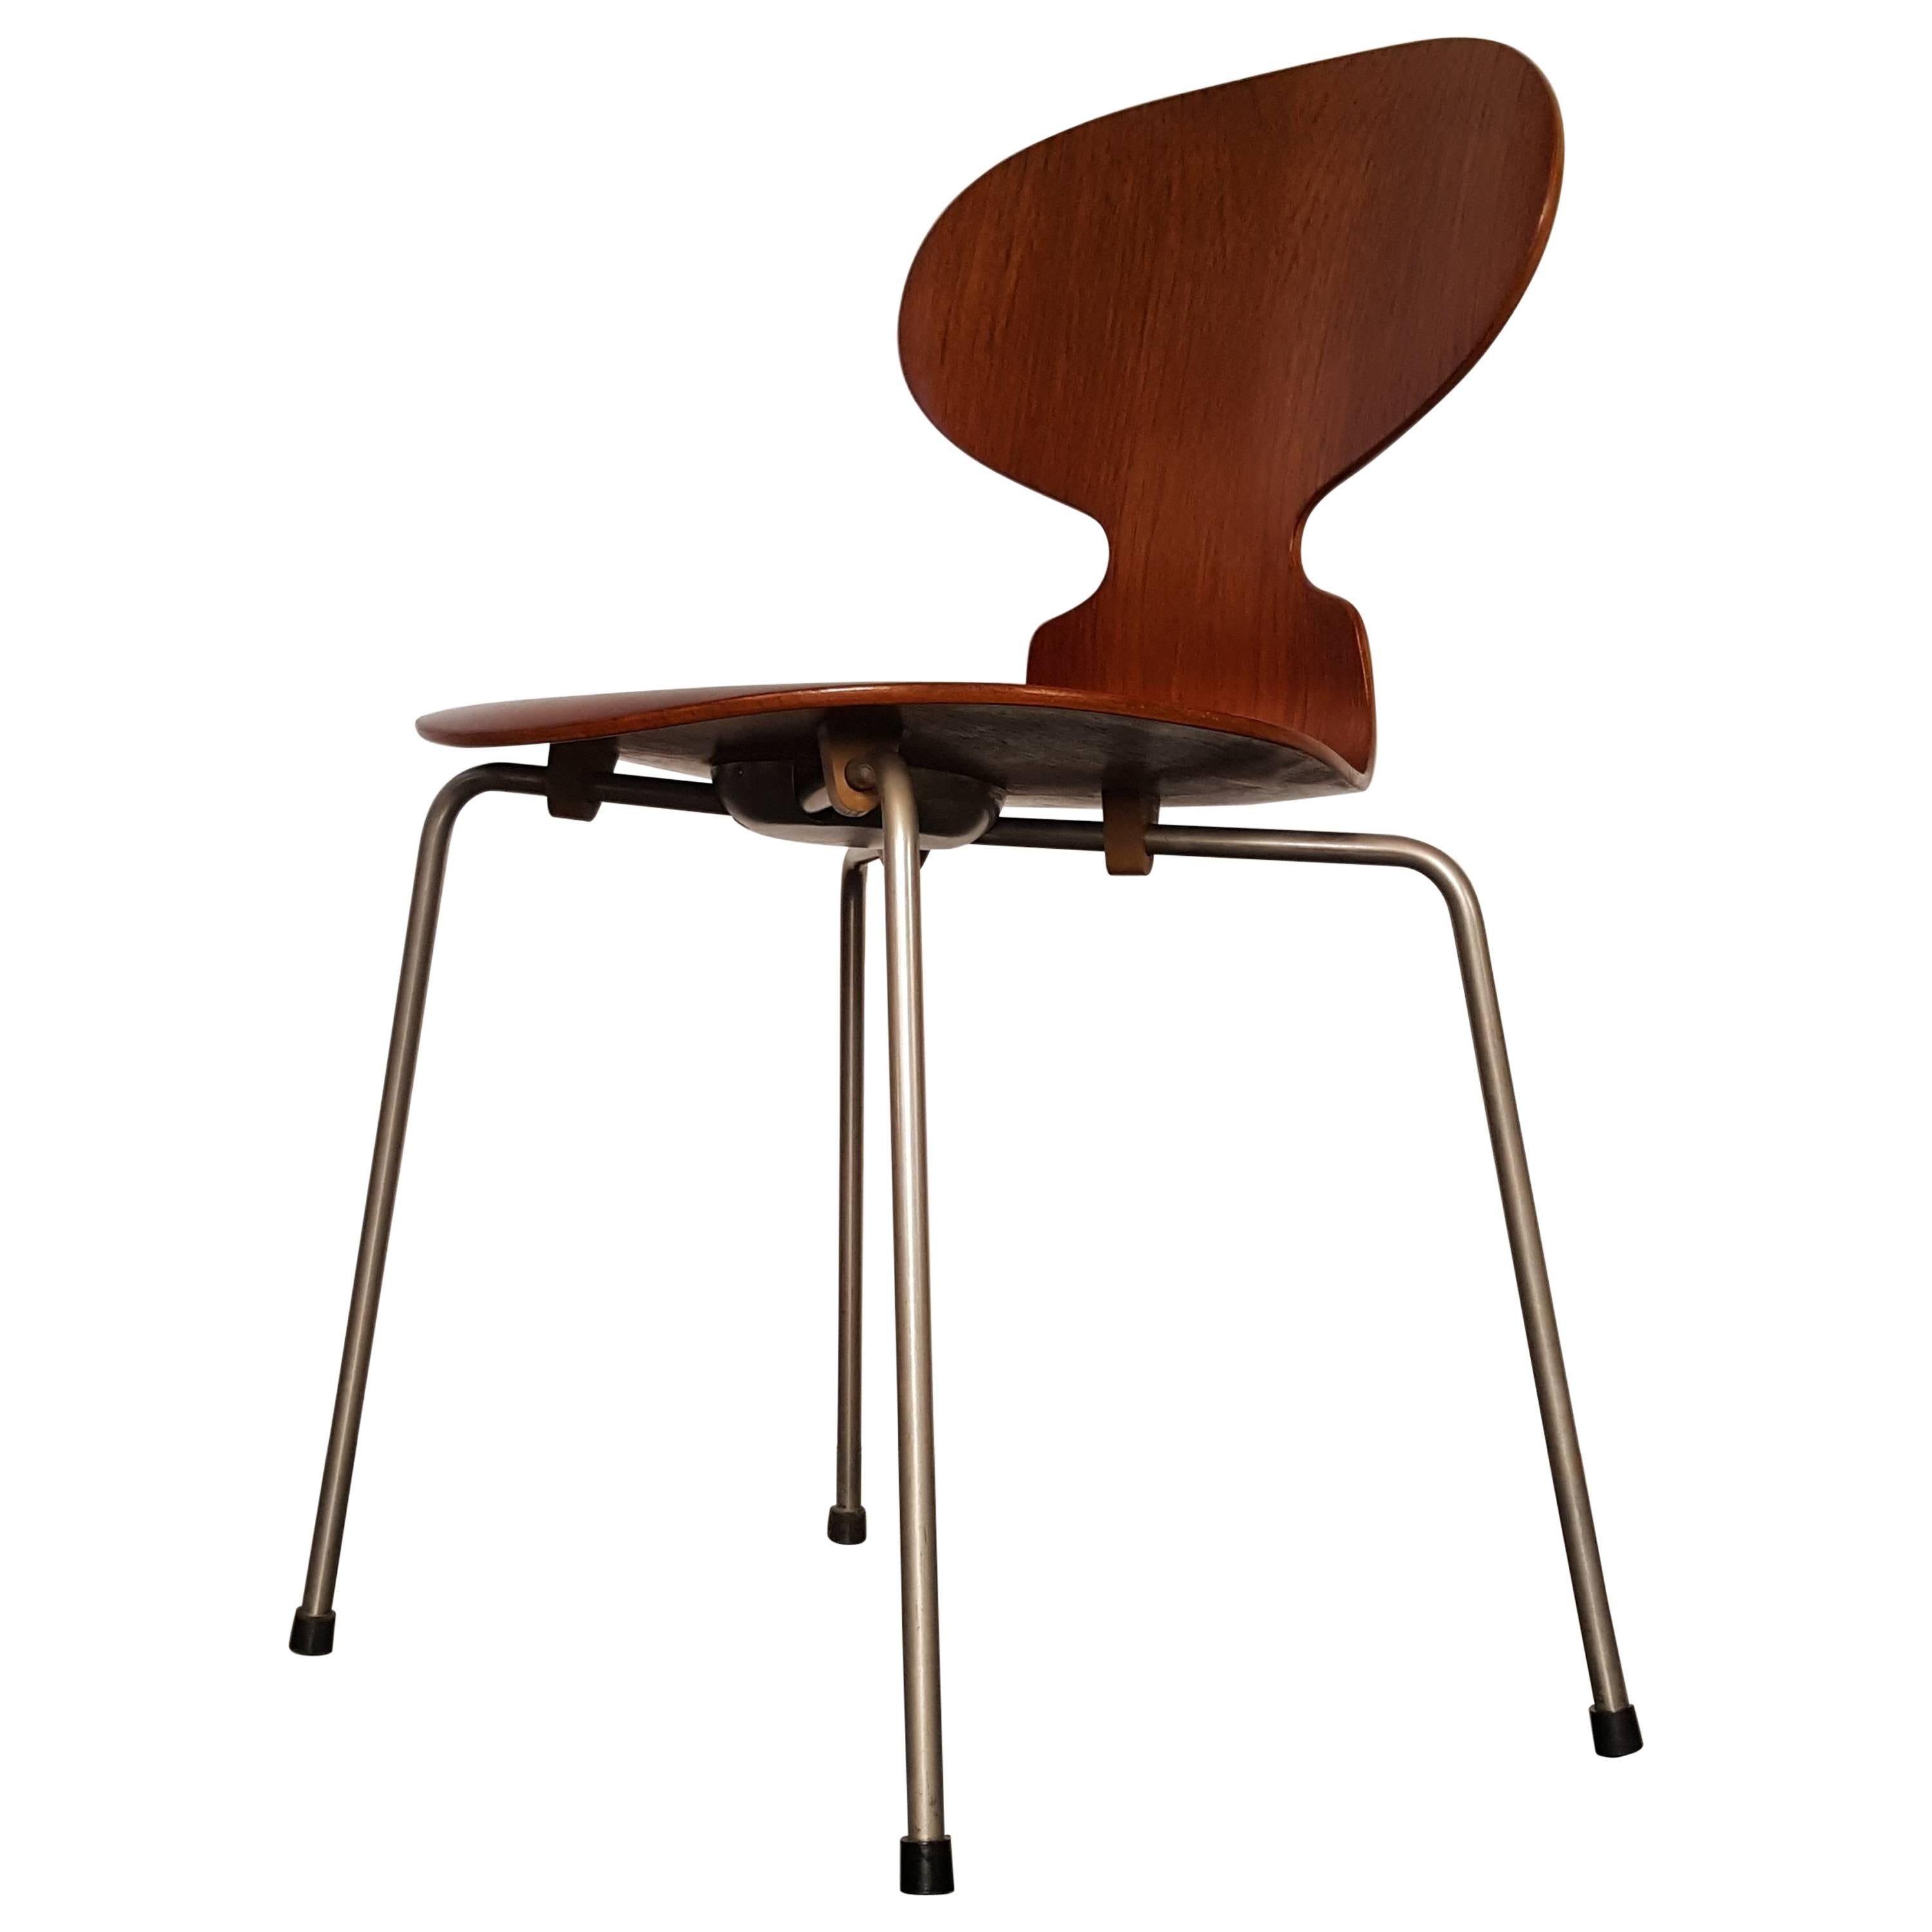 Model 3100 'Ant' Chair by Arne Jacobsen for Fritz Hansen, 1952